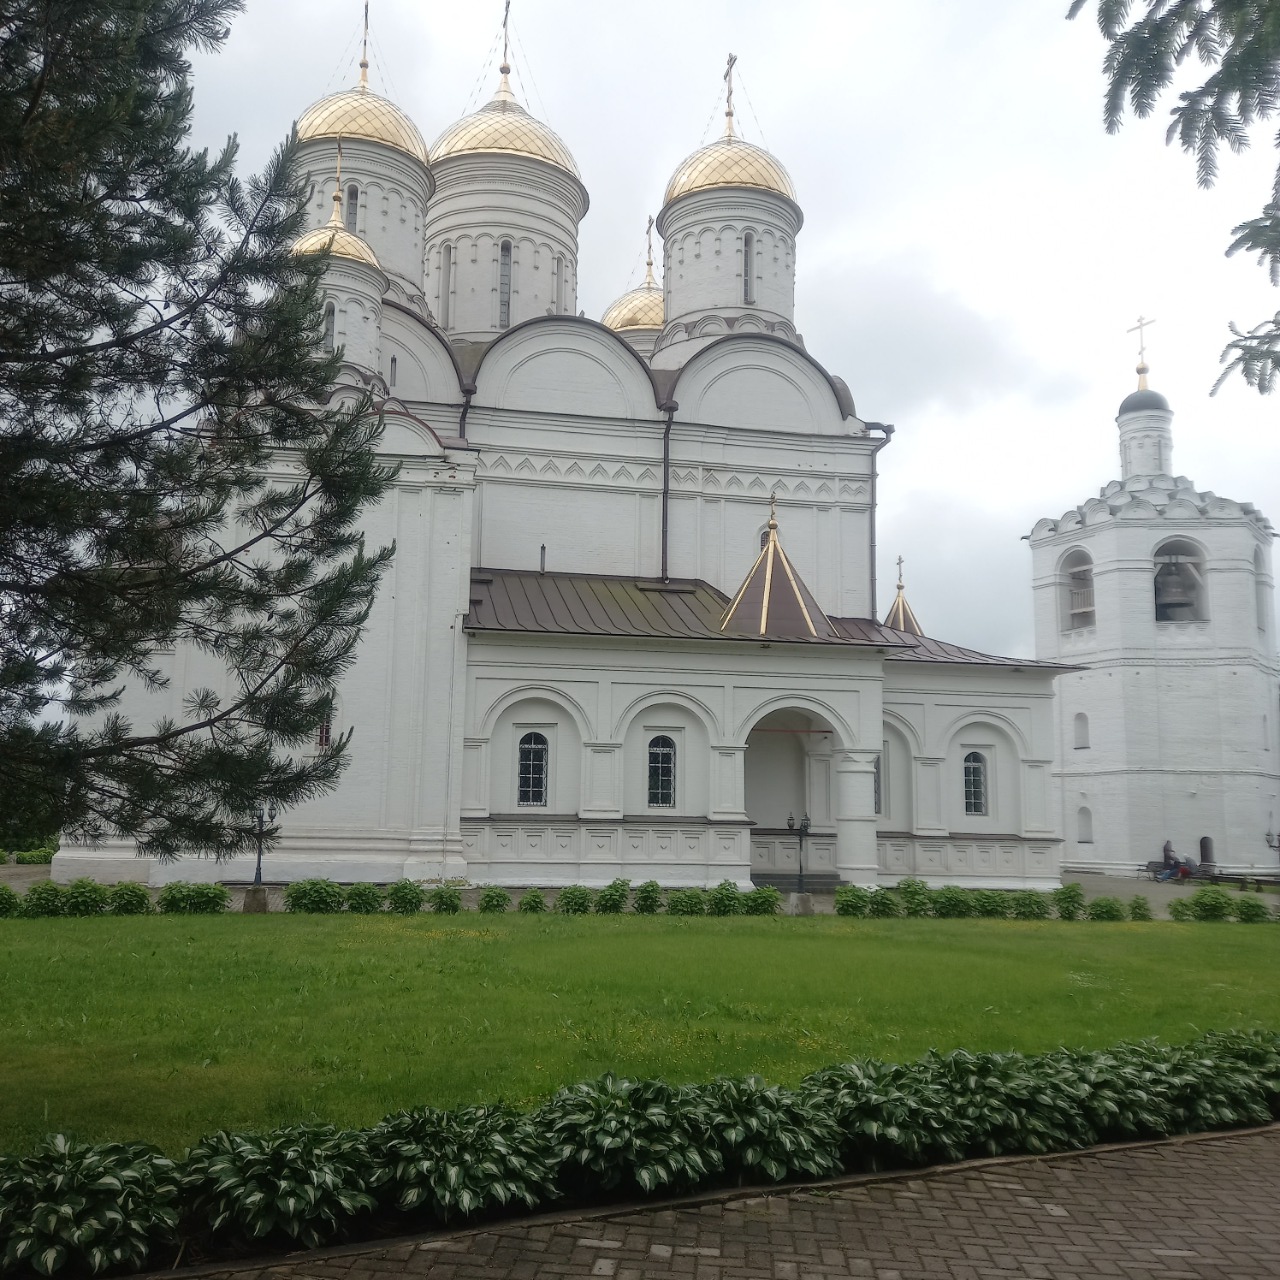 Июньские мероприятия Клуба золотого возраста (г. Вязьма) - Экскурсия по святым местам